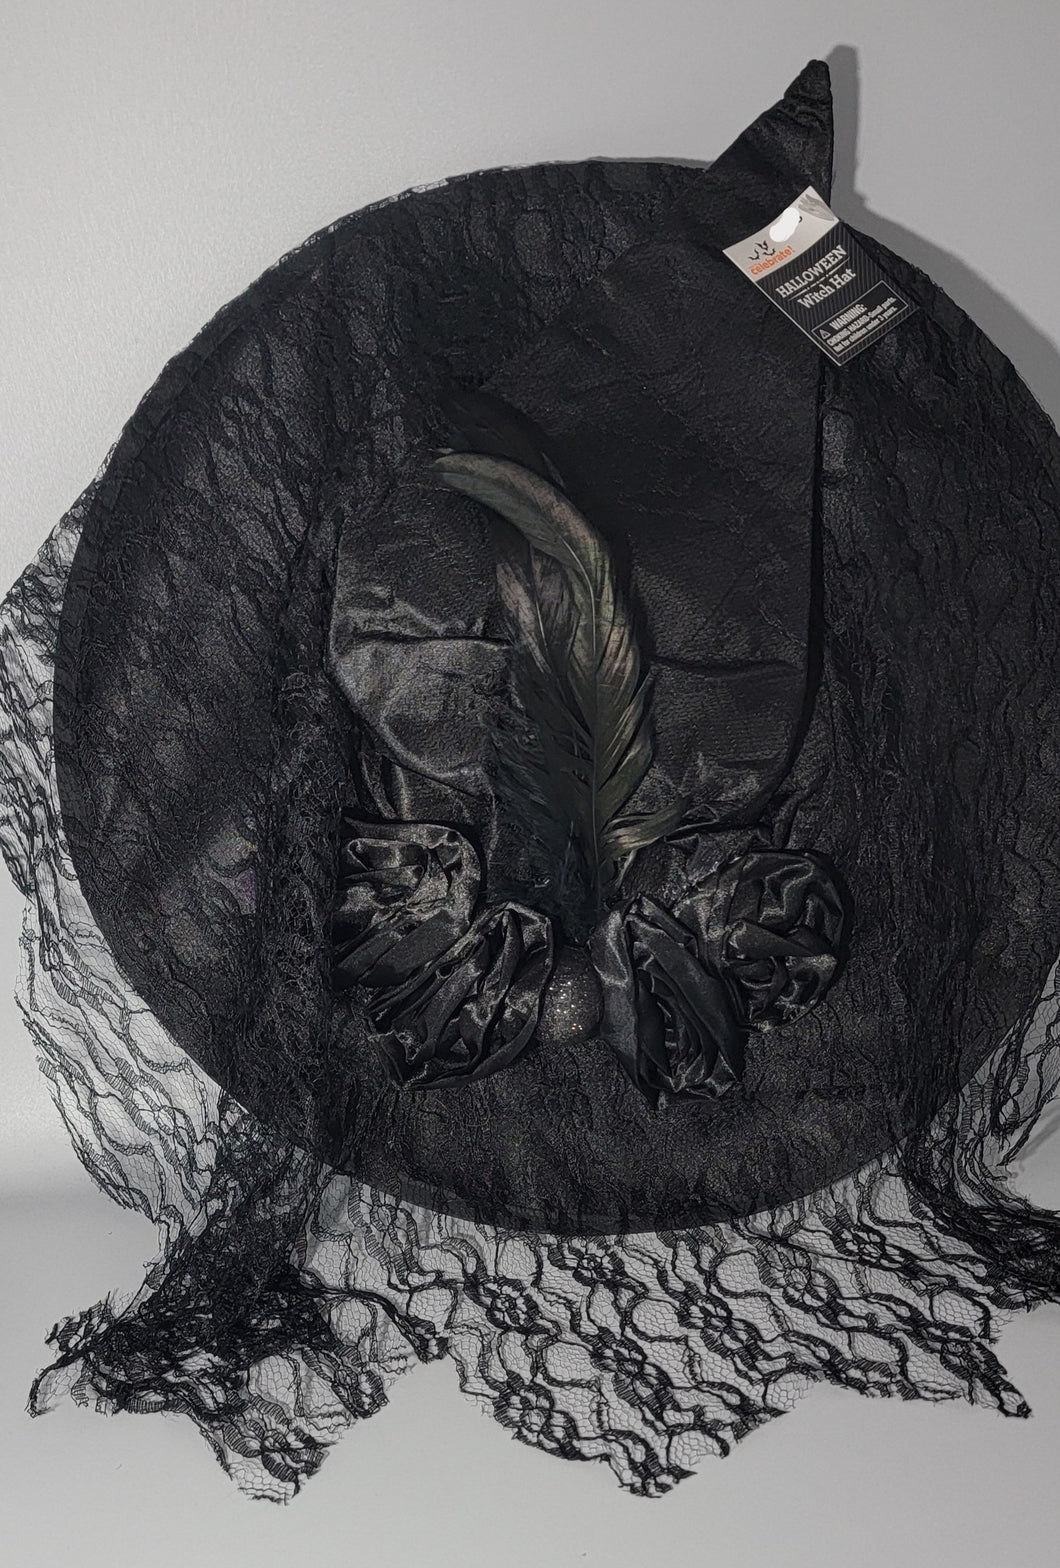 Women’s Witch Hat Halloween Costume Black Fancy Spooky Skull & Roses